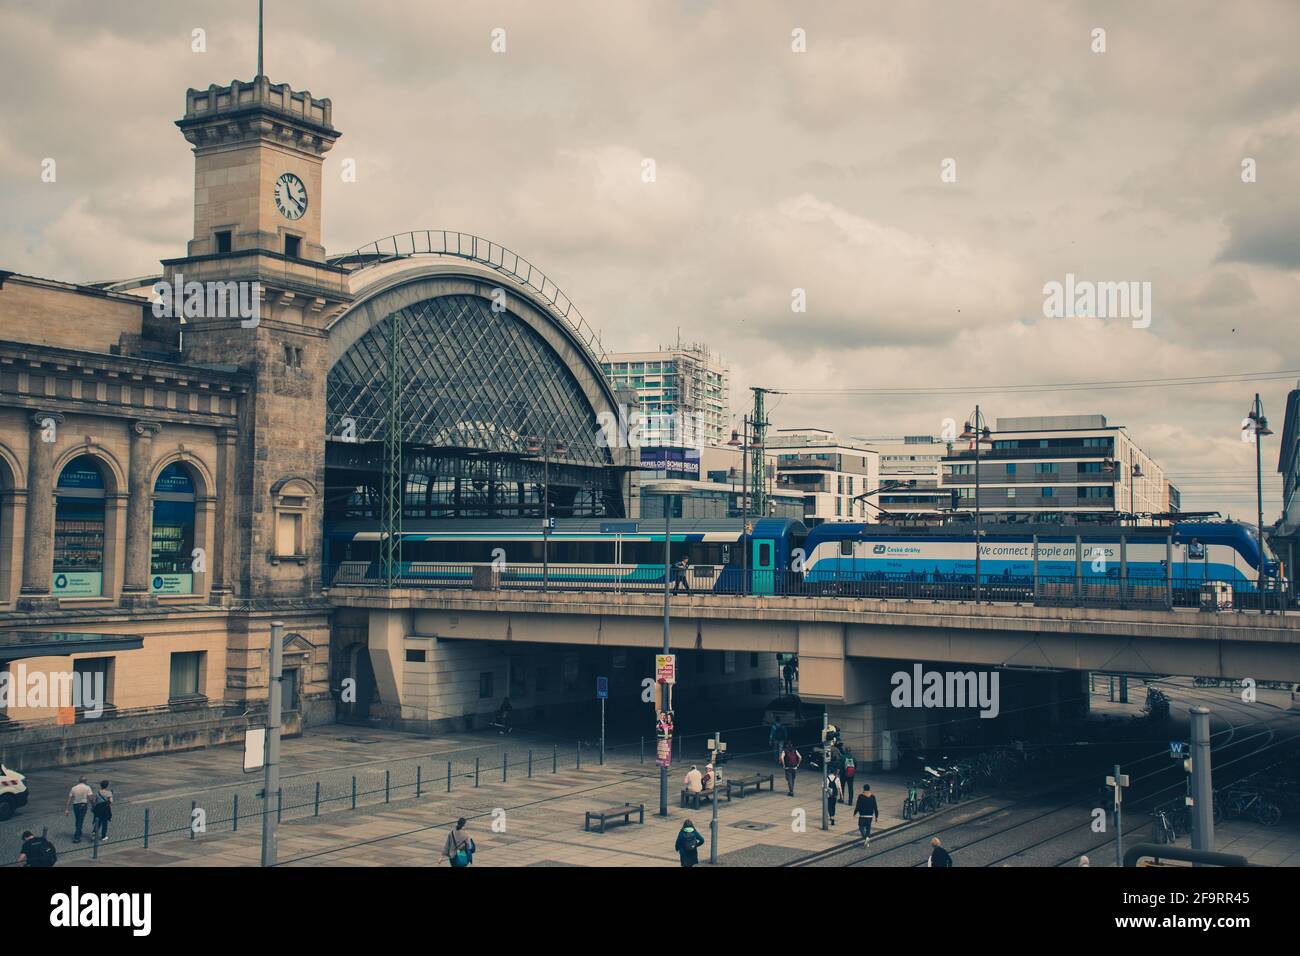 21 mai 2019 Dresde, Allemagne - Dresde Hauptbahnhof - la gare principale. Trams de rue et train à Bridge.variété de transports en commun Banque D'Images